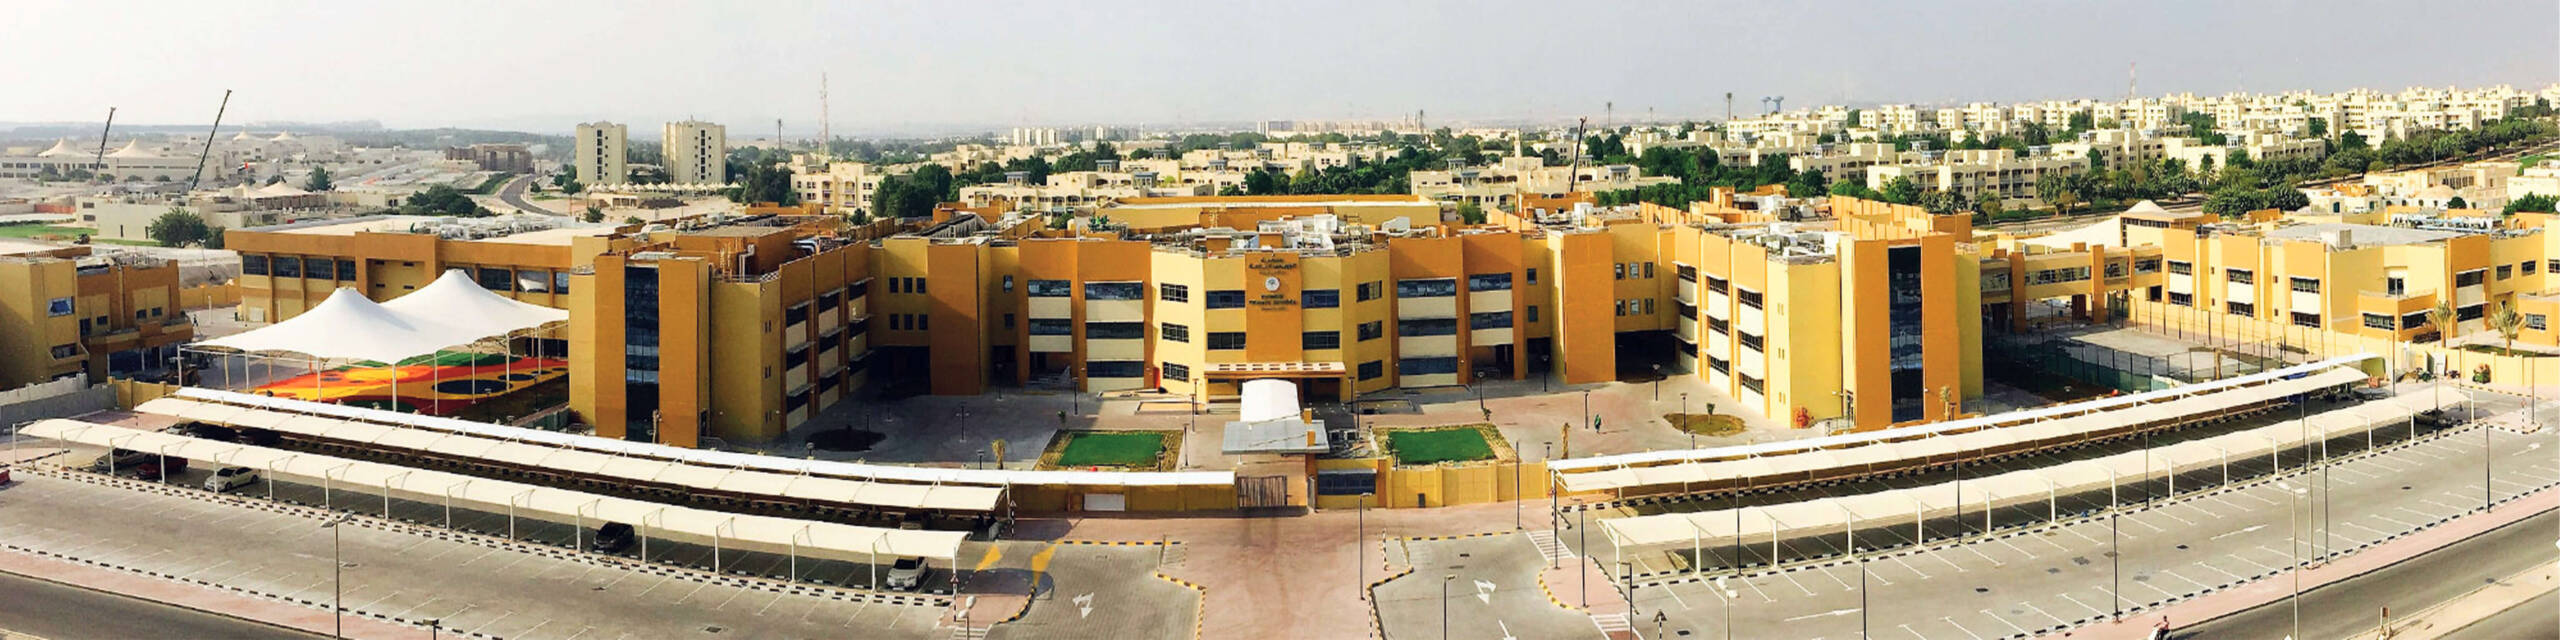 Sabis International School, Abu Dhabi